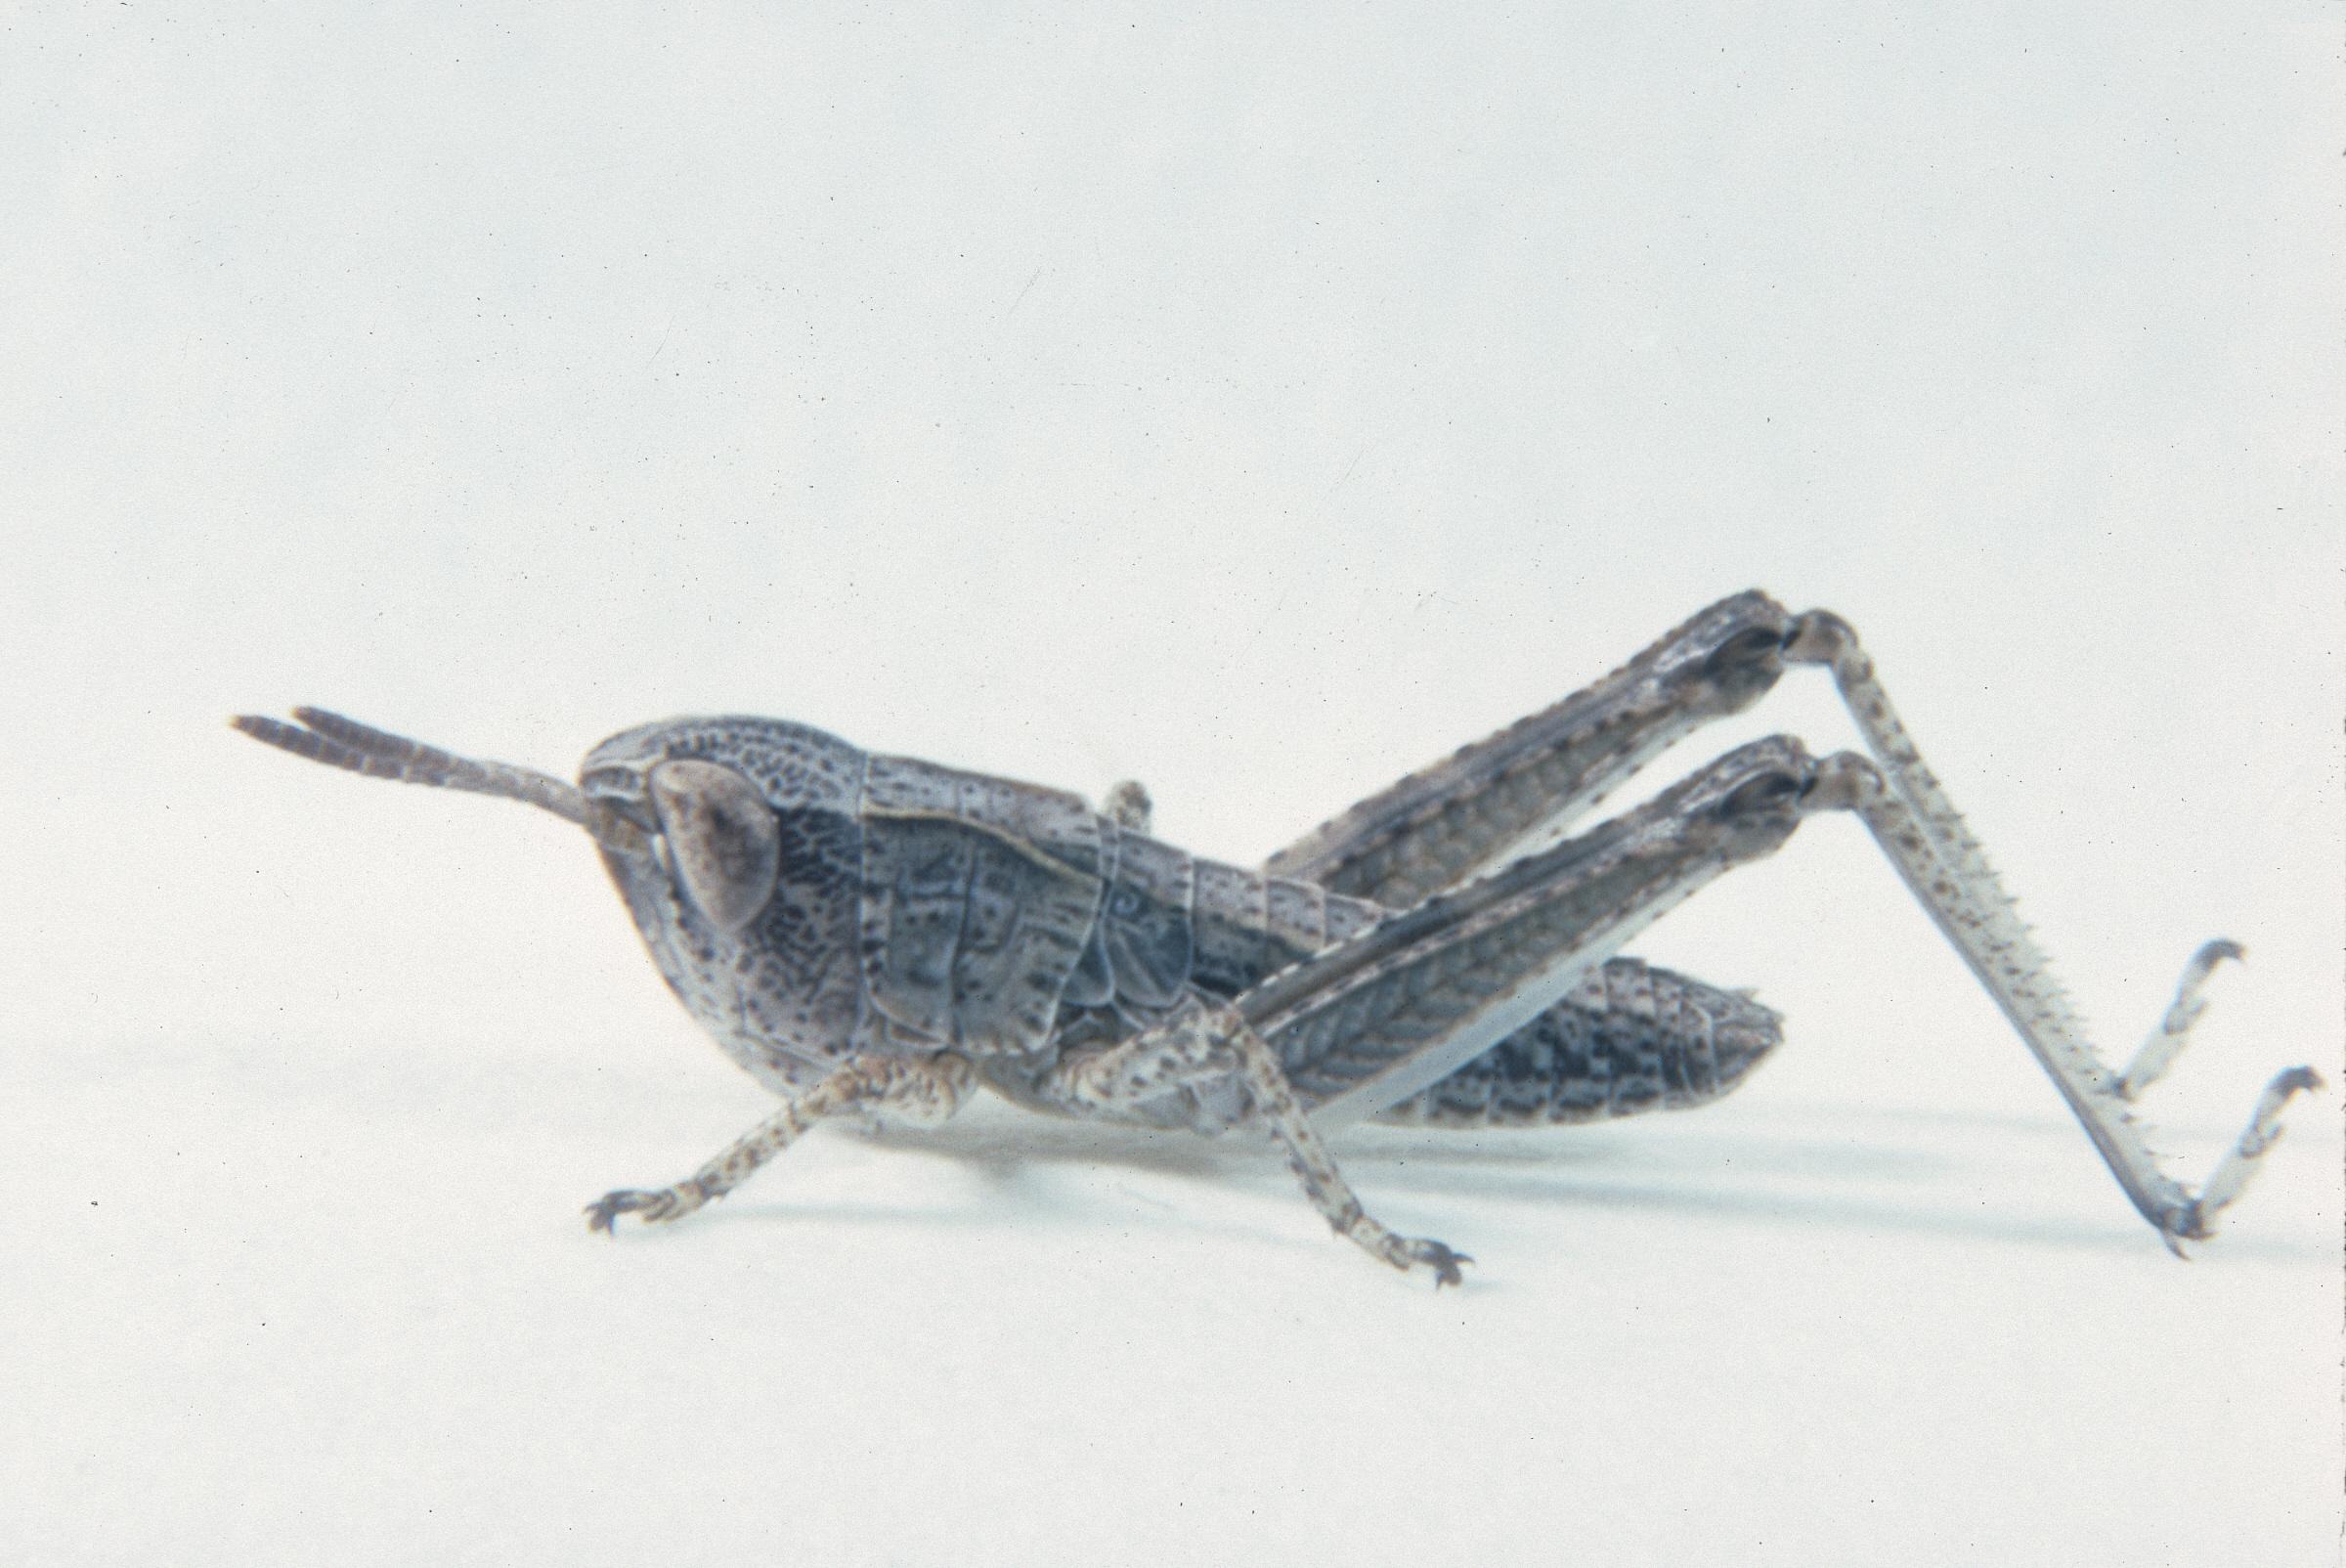 Aeropedellus clavatus - Figure 2